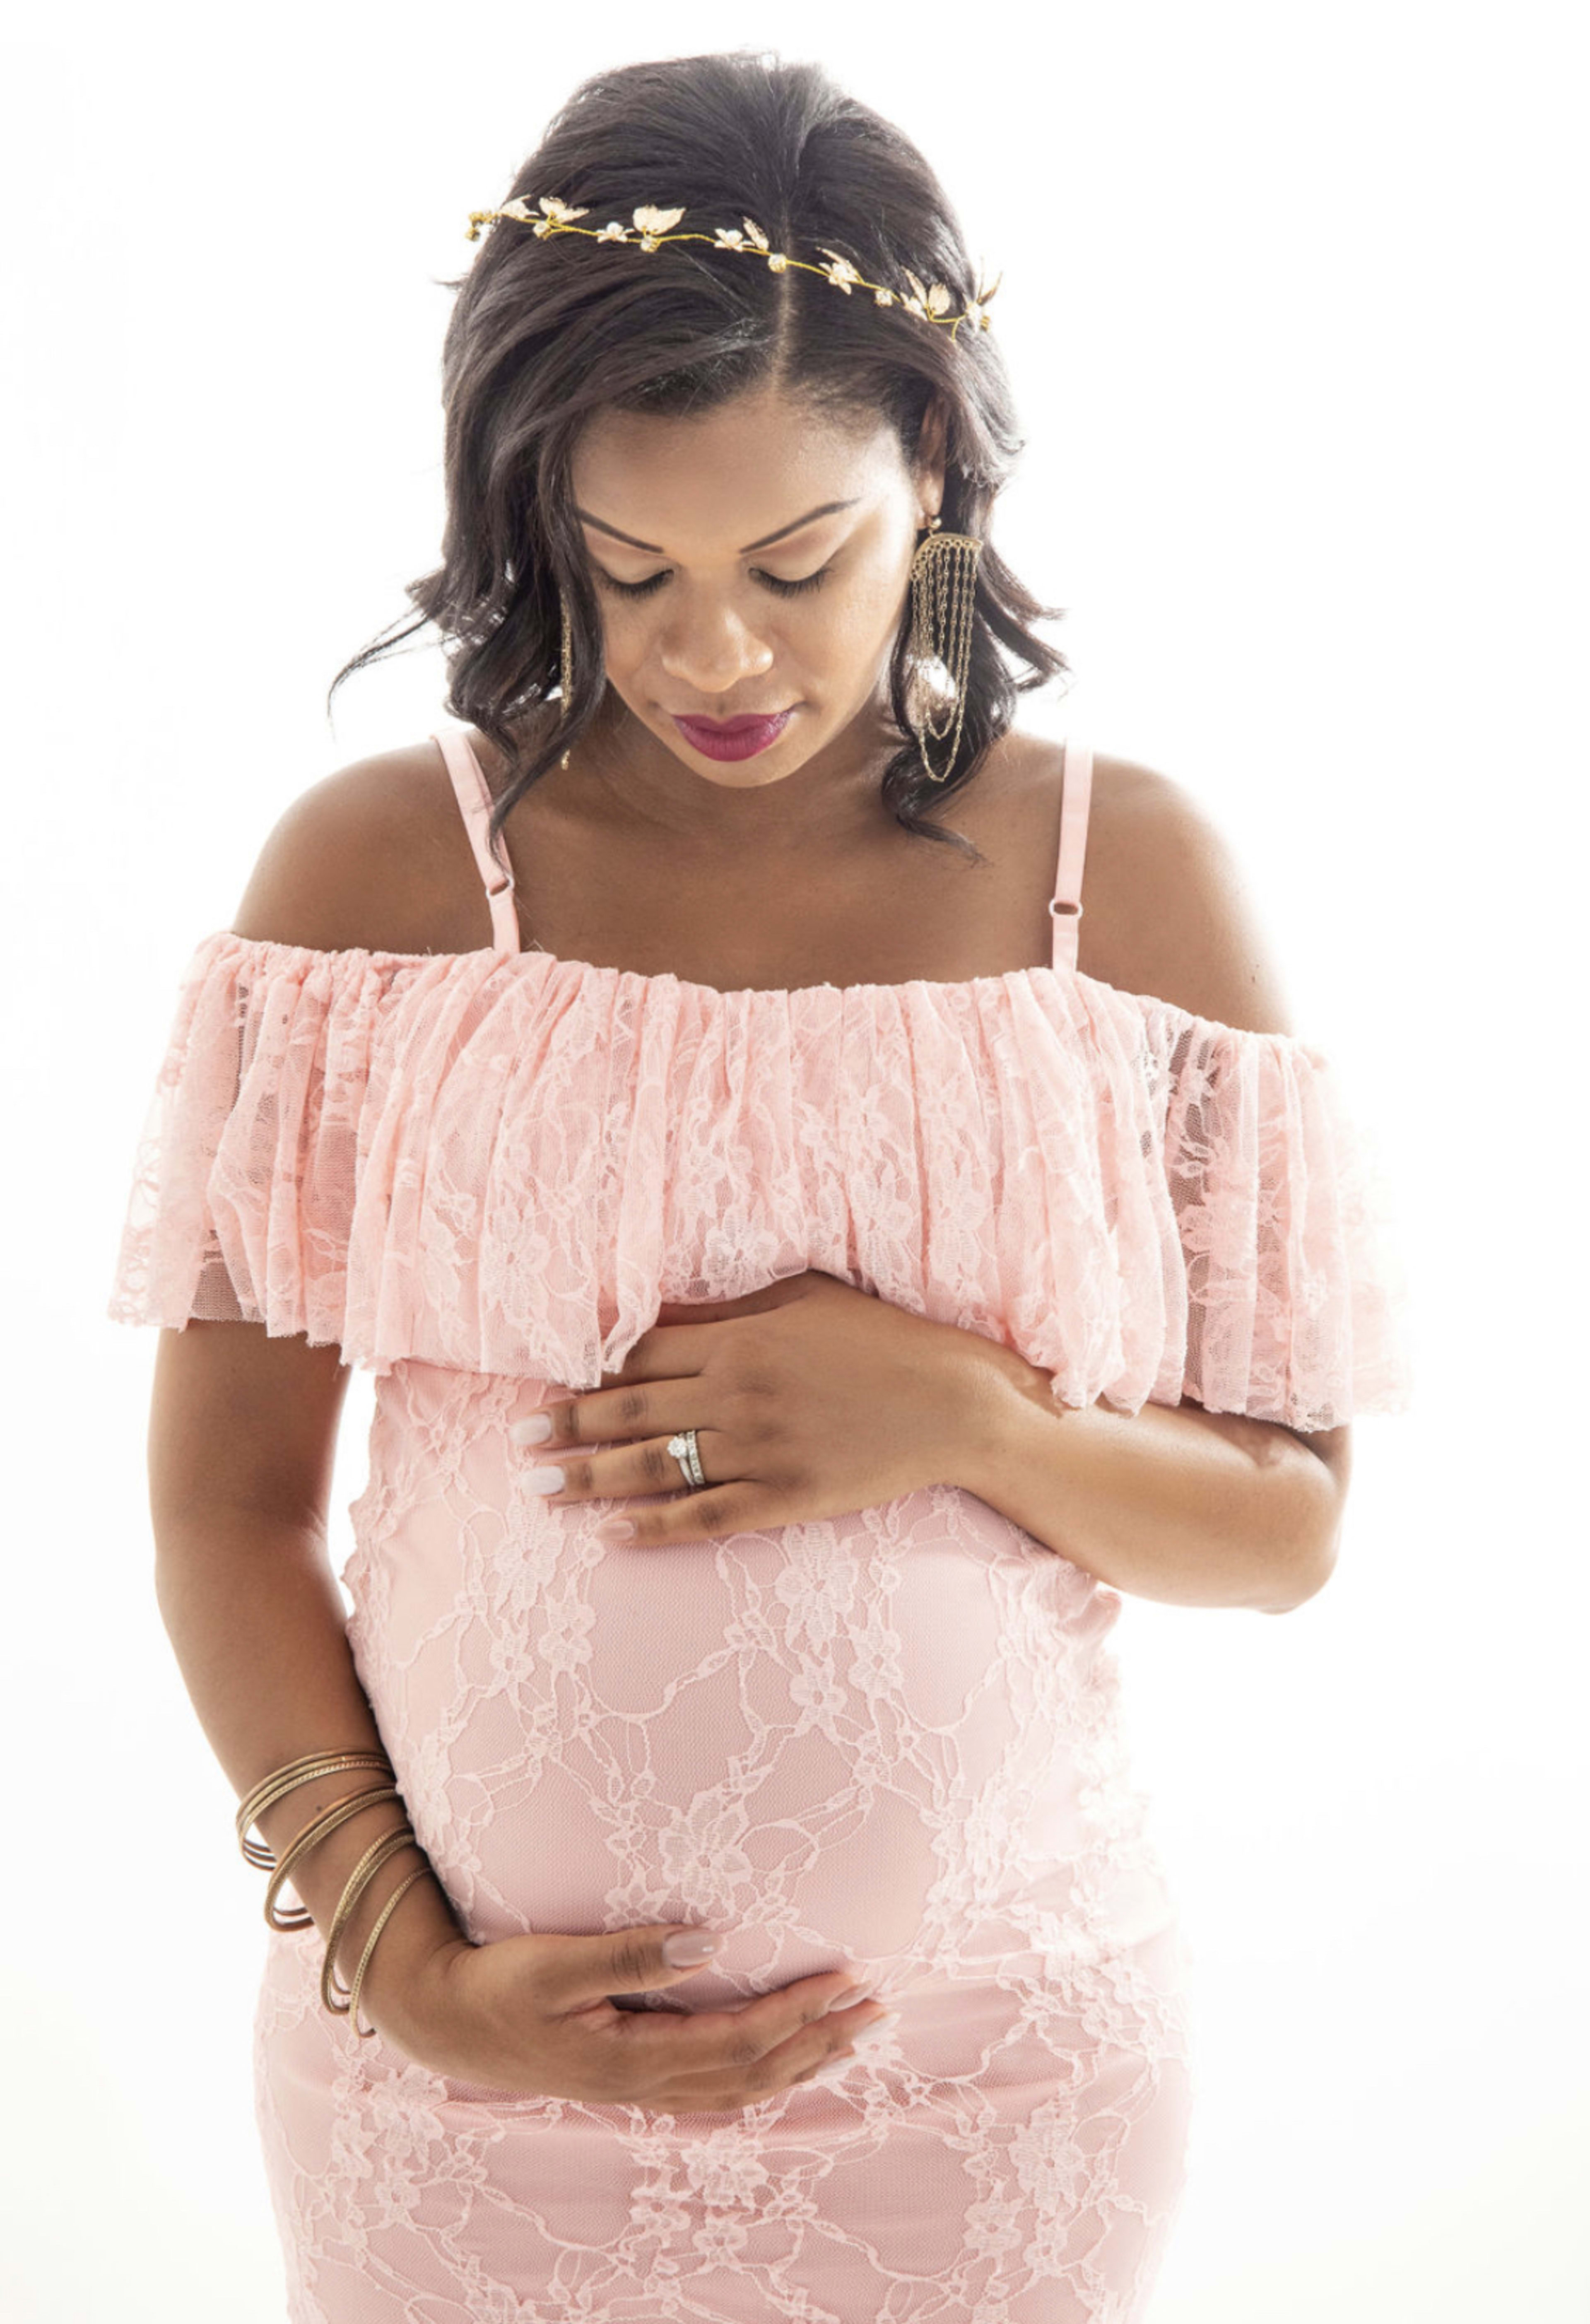 Una mujer embarazada con un vestido rosa boho acariciando su vientre durante una sesión de fotos de maternidad.